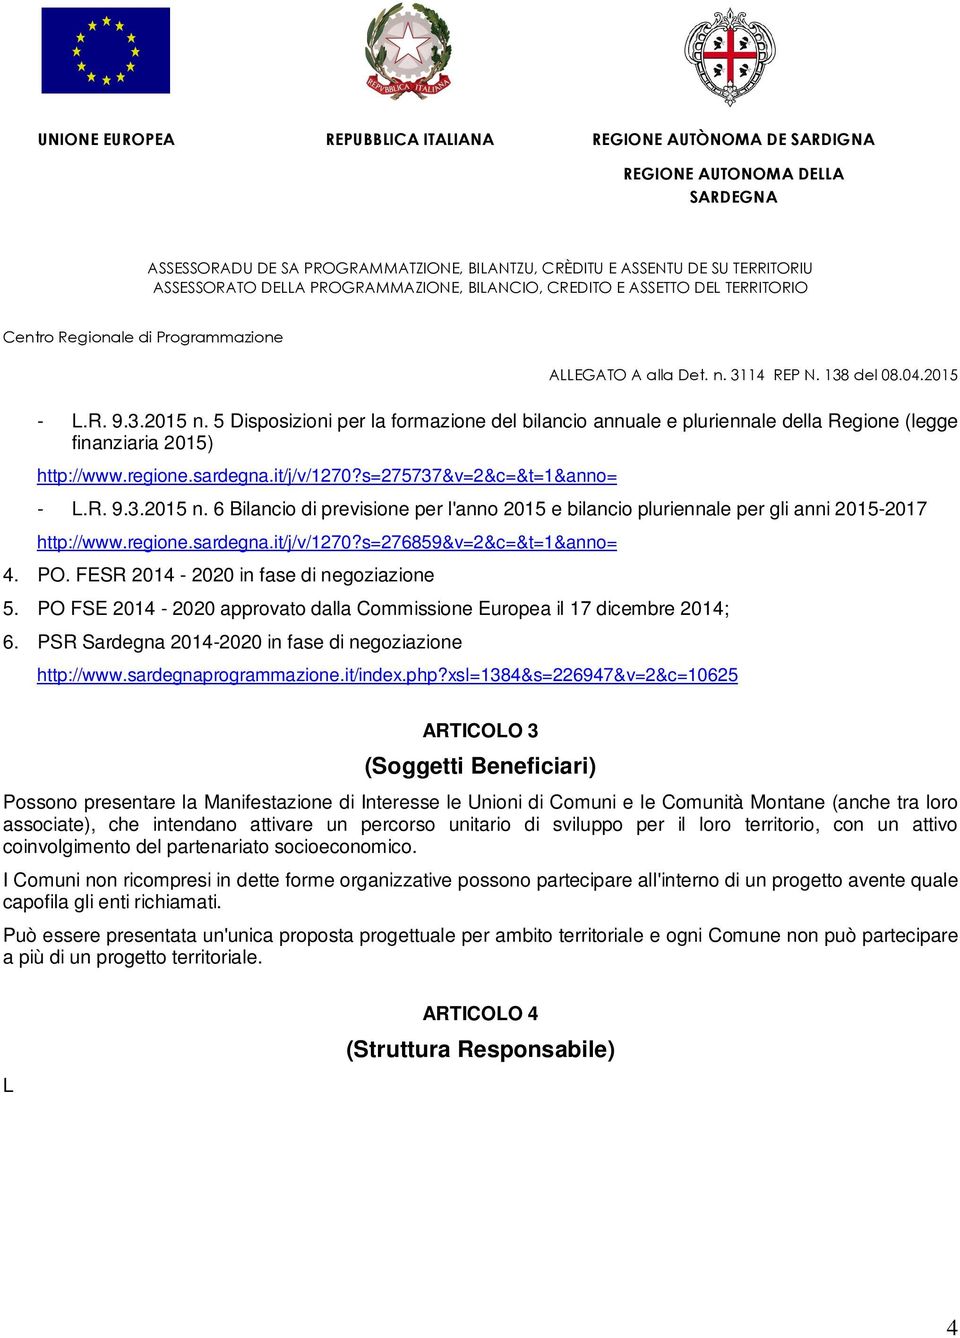 PSR Sardegna 2014-2020 in fase di negoziazione http://www.sardegnaprogrammazione.it/index.php?